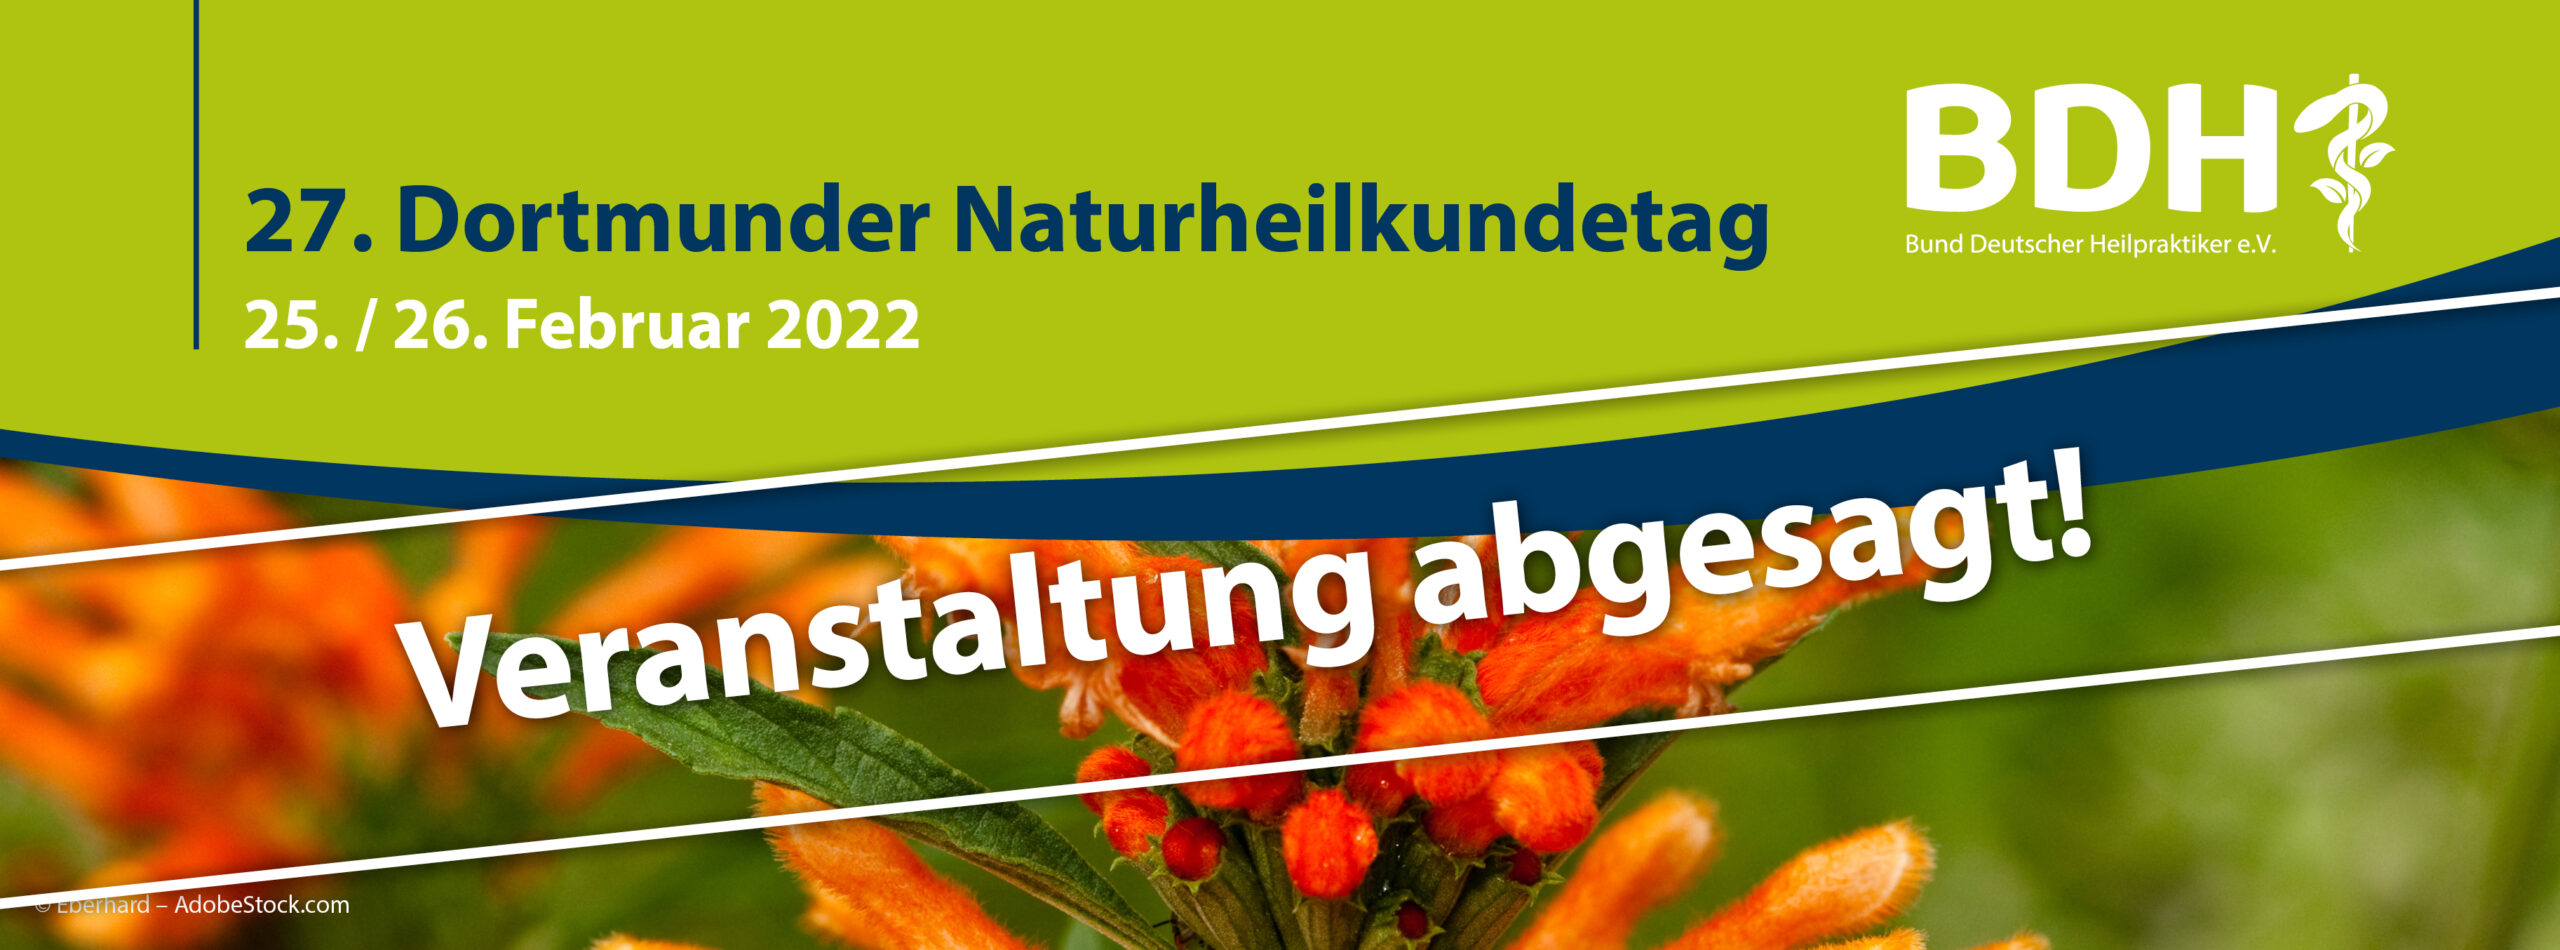 27. Dortmunder Naturheilkundetag wird abgesagt